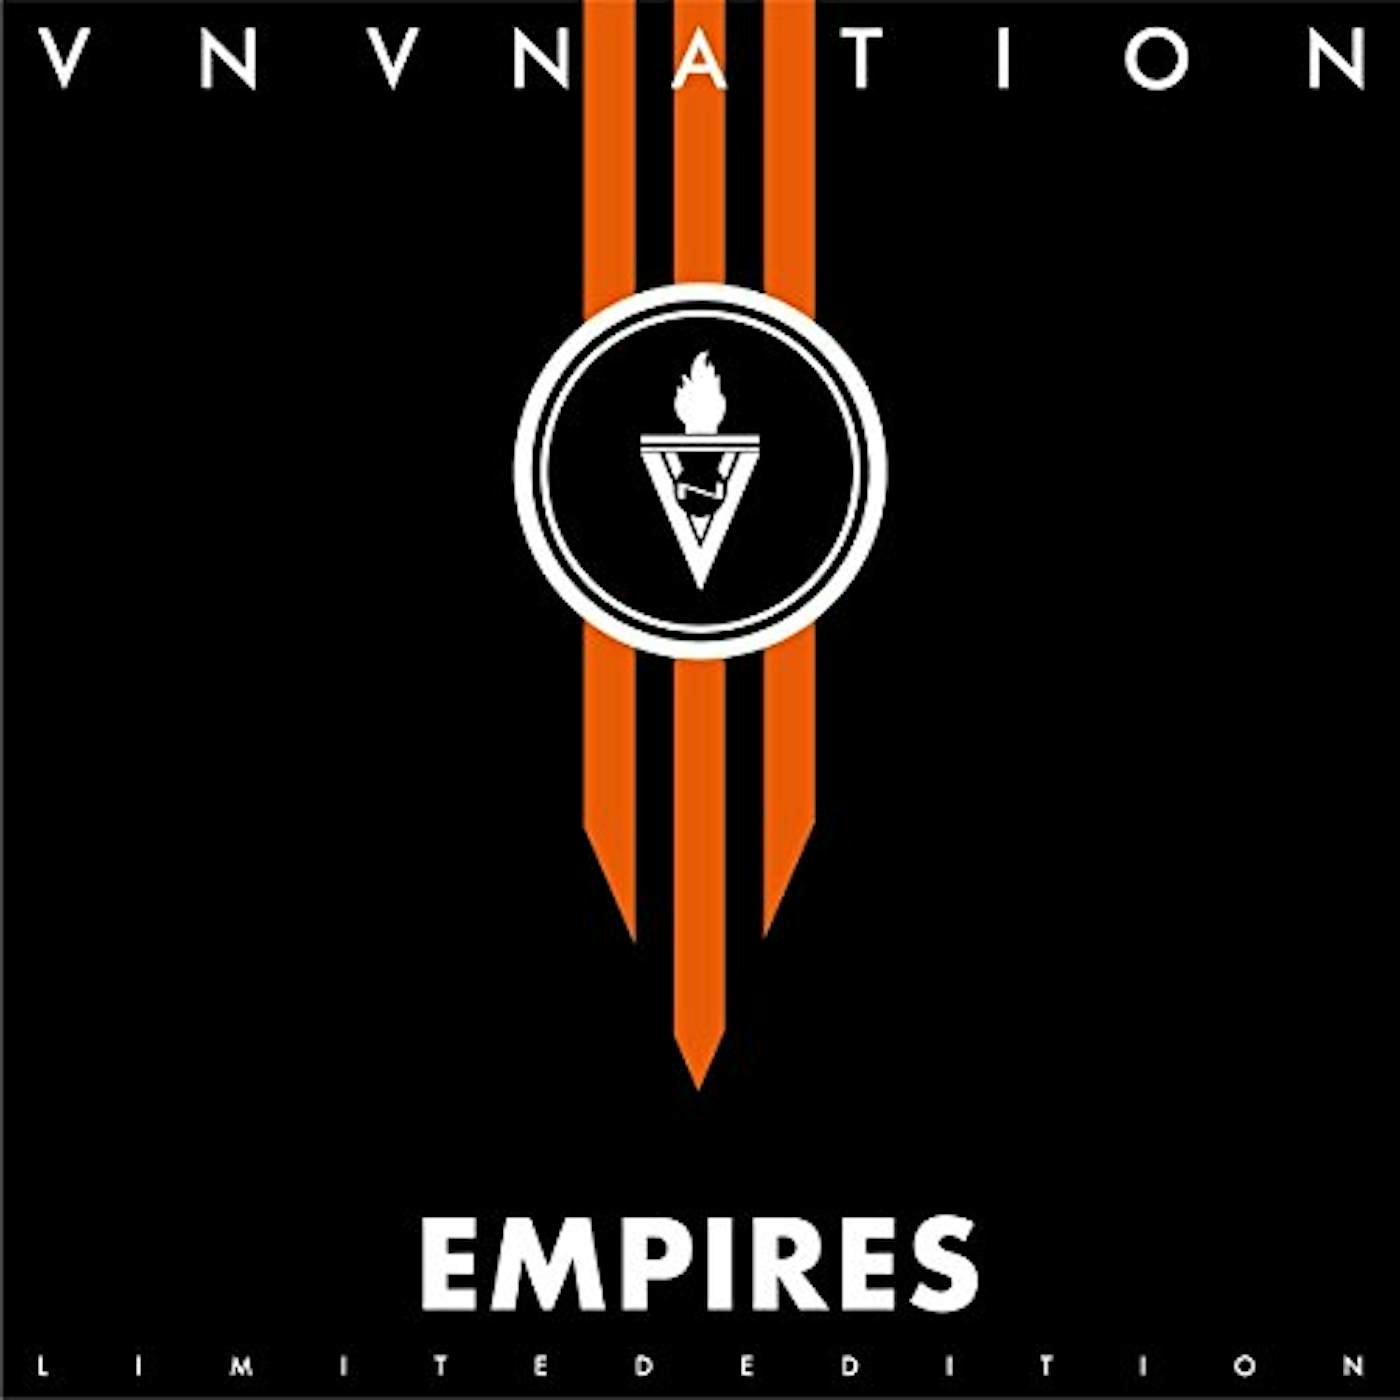 VNV Nation EMPIRES (LTD. EDITION) Vinyl Record